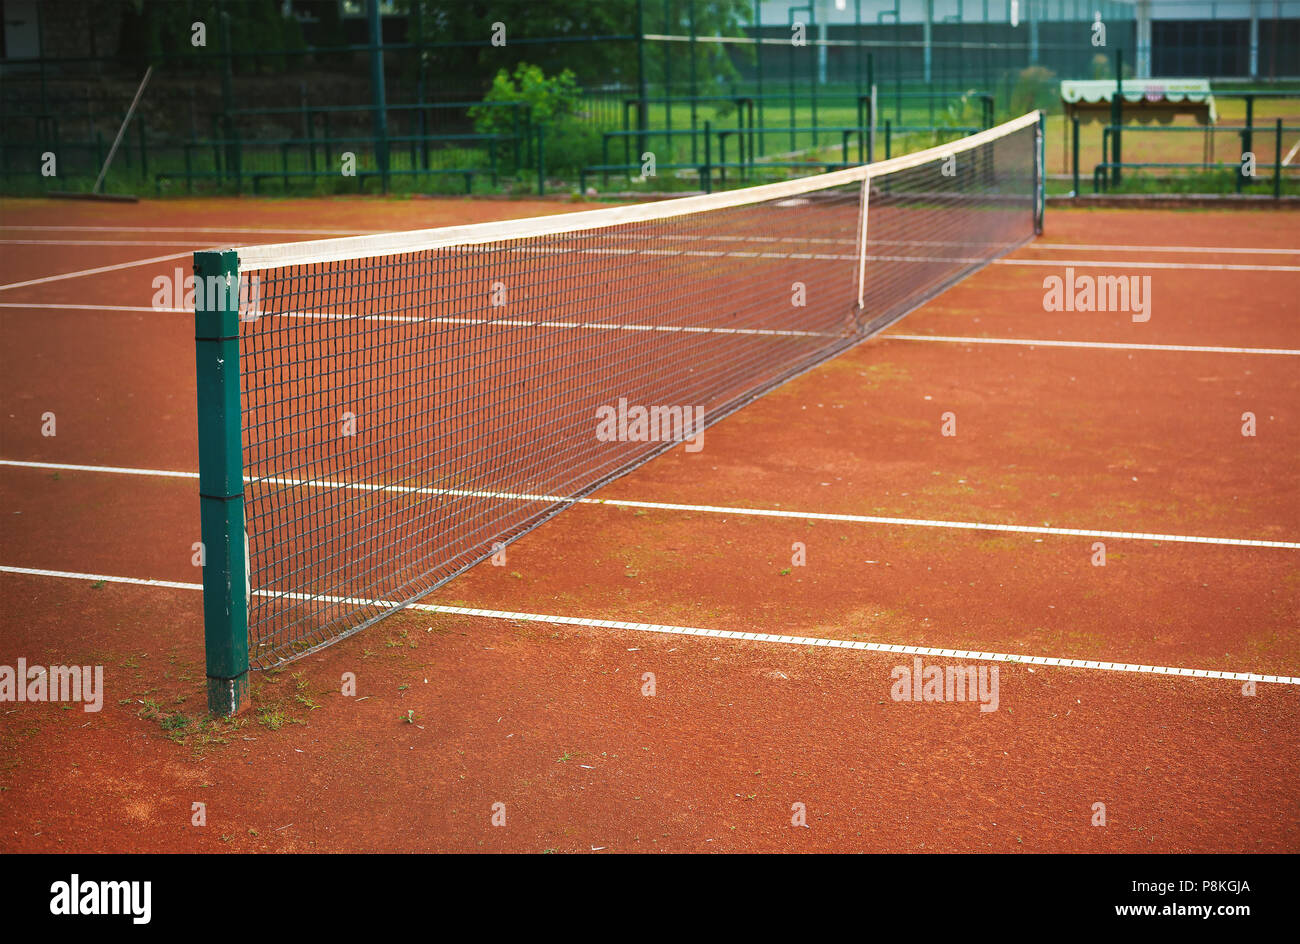 Dettagli della semplice e piccolo cantiere di tennis durante il giorno. Foto Stock